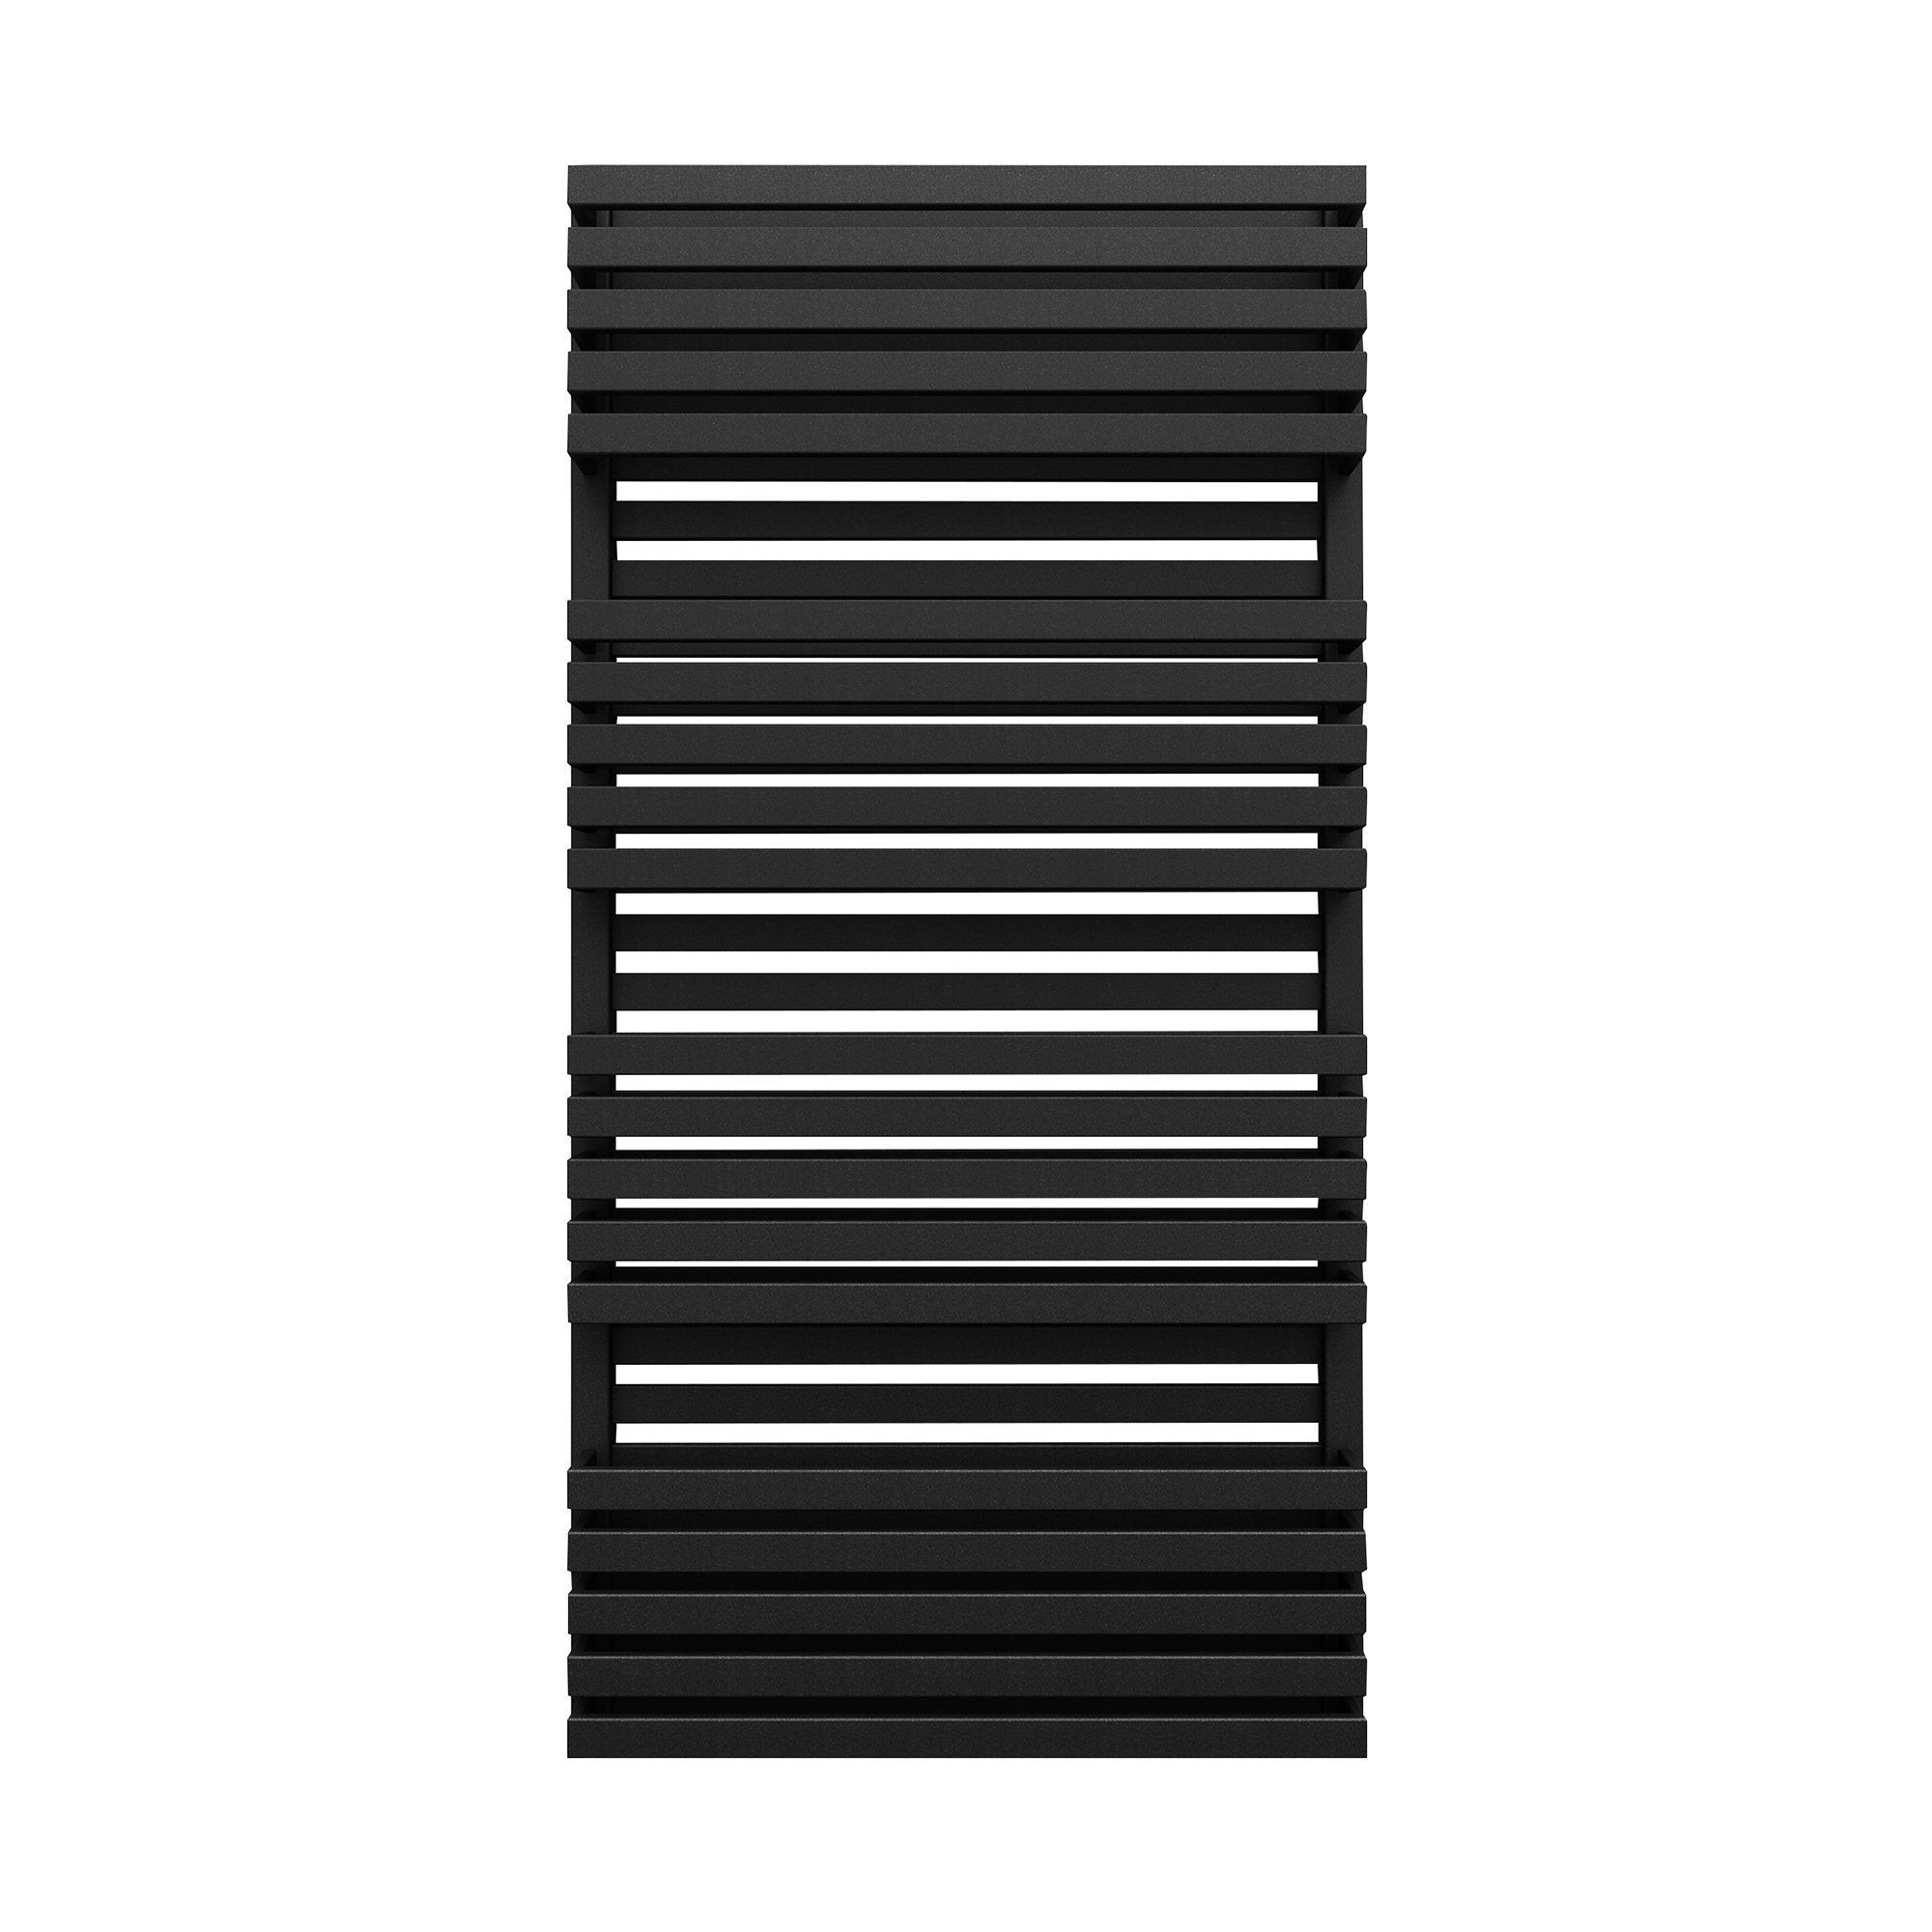 Terma Quadrus Bold Metallic black Towel warmer (W)600mm x (H)1185mm